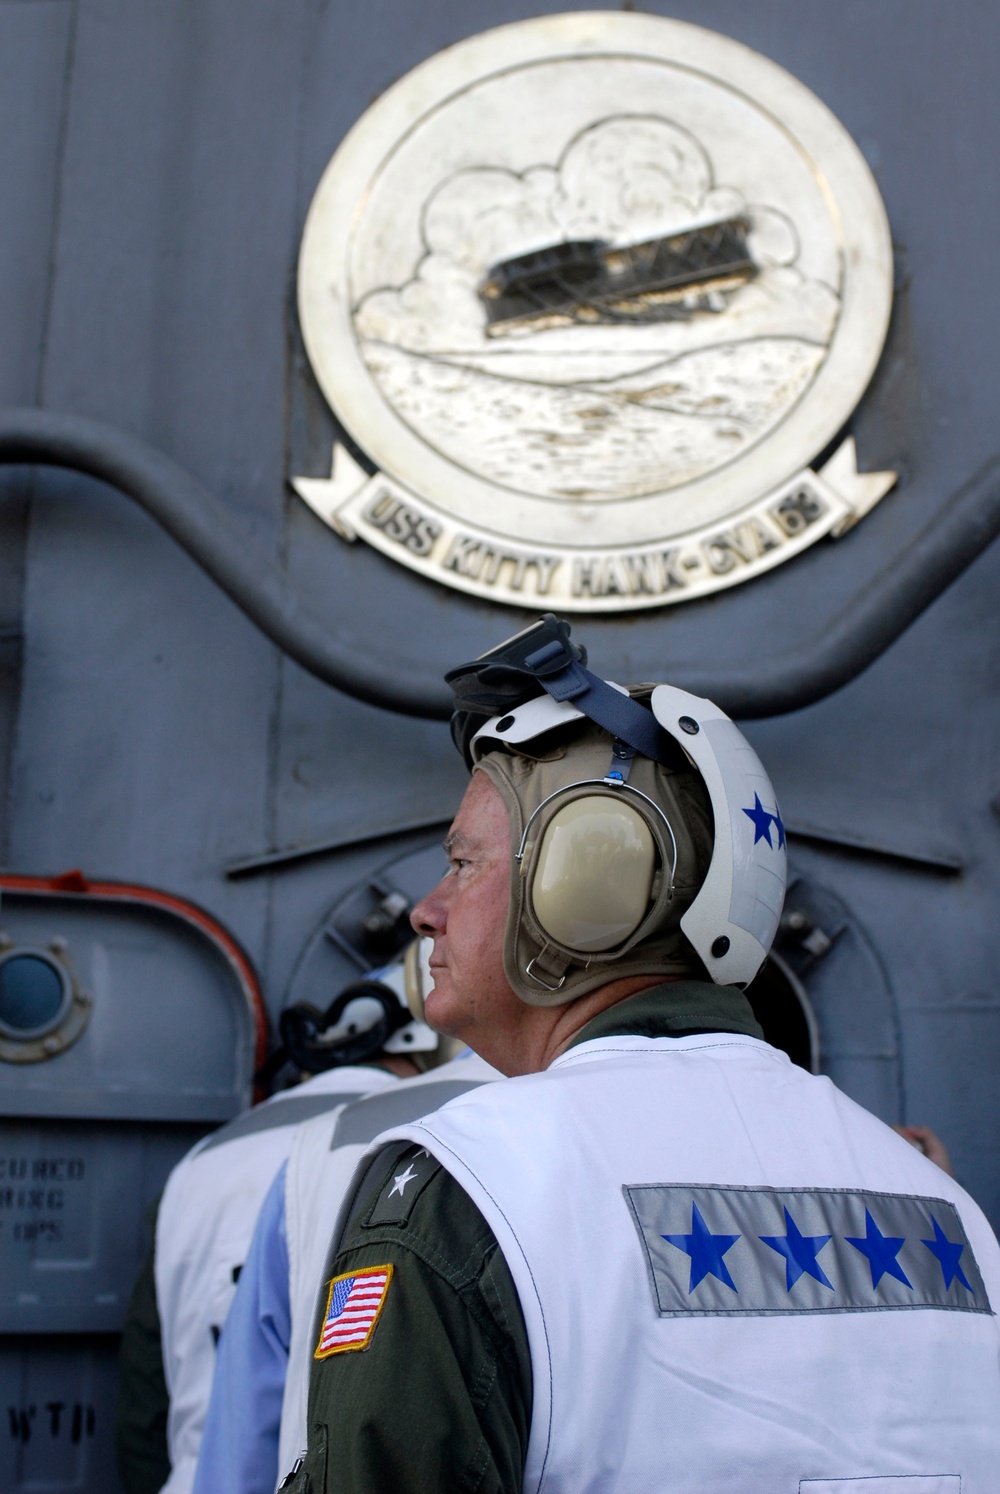 LSO's on USS Kitty Hawk